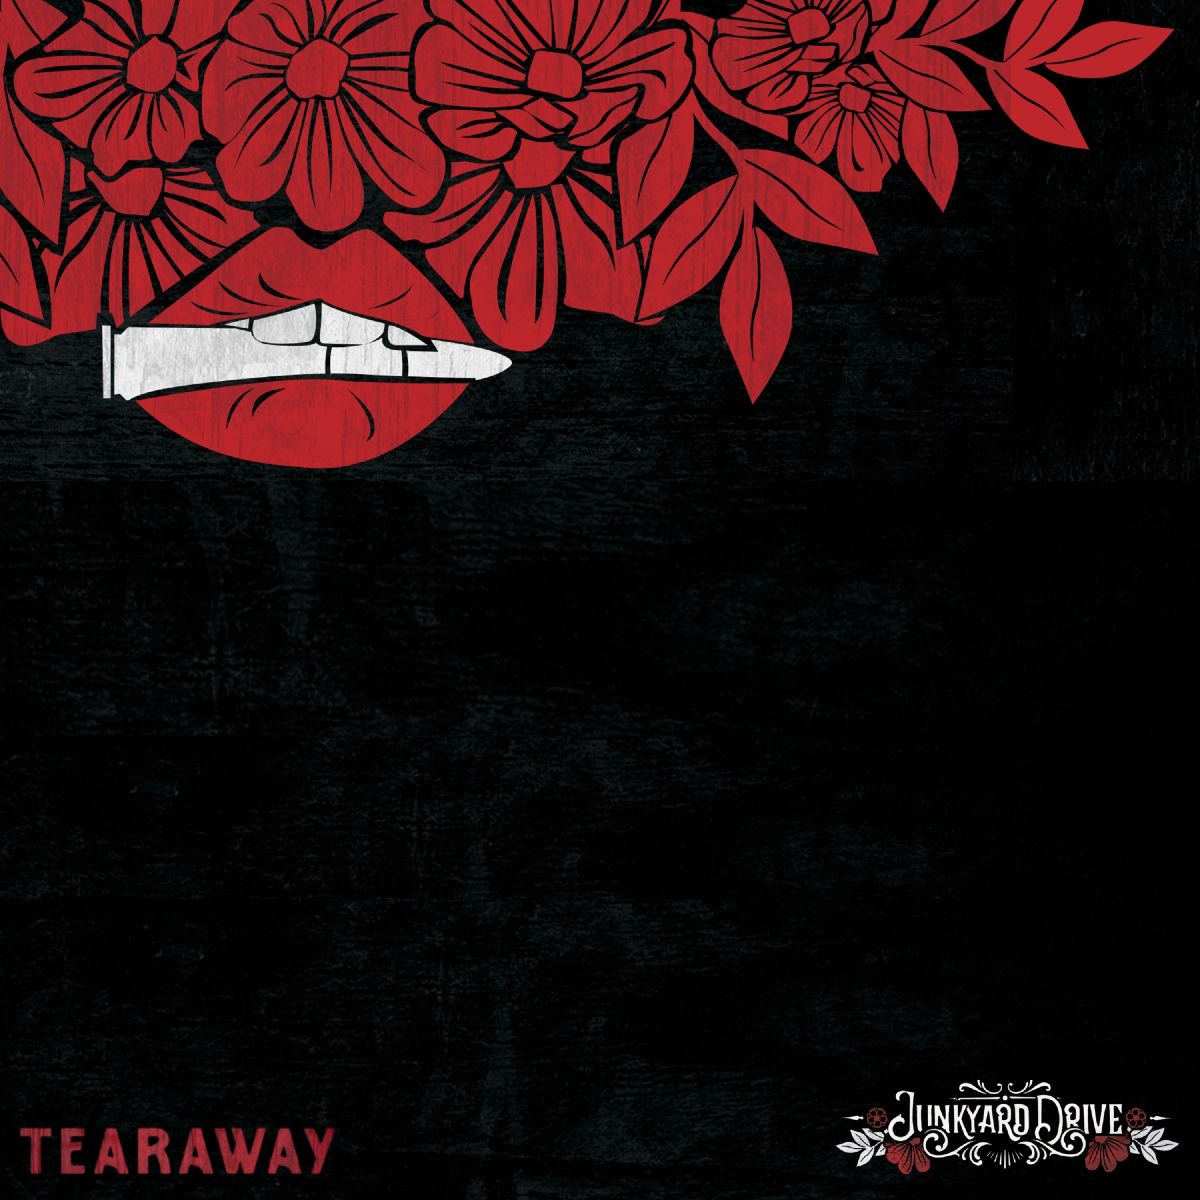 Junkyard Drive “Tearaway” single artwork